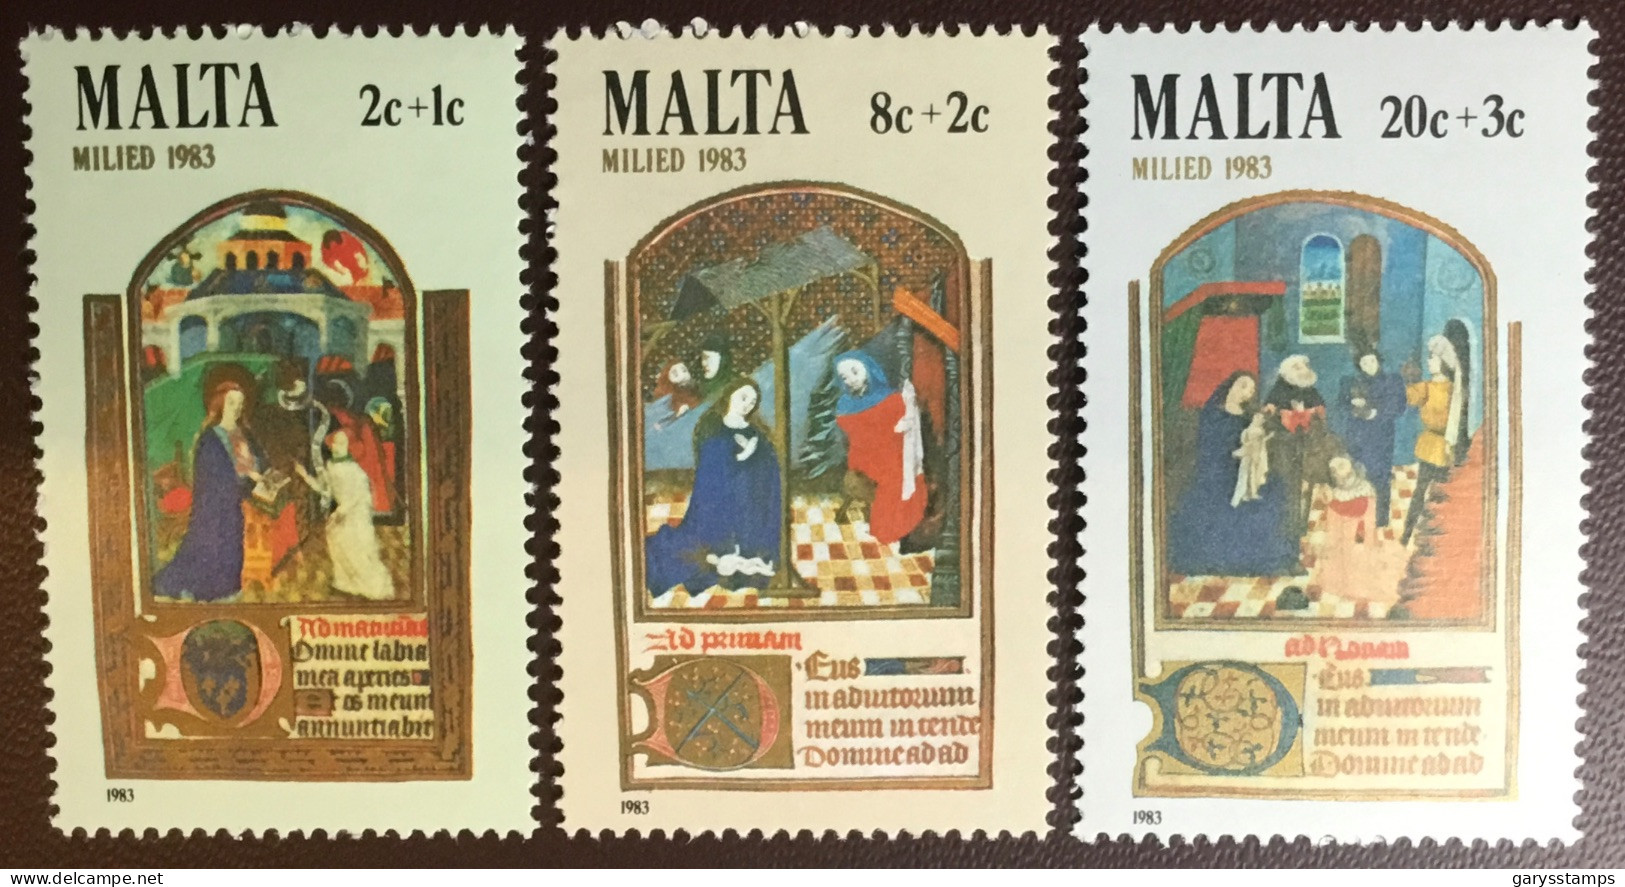 Malta 1983 Christmas MNH - Malta